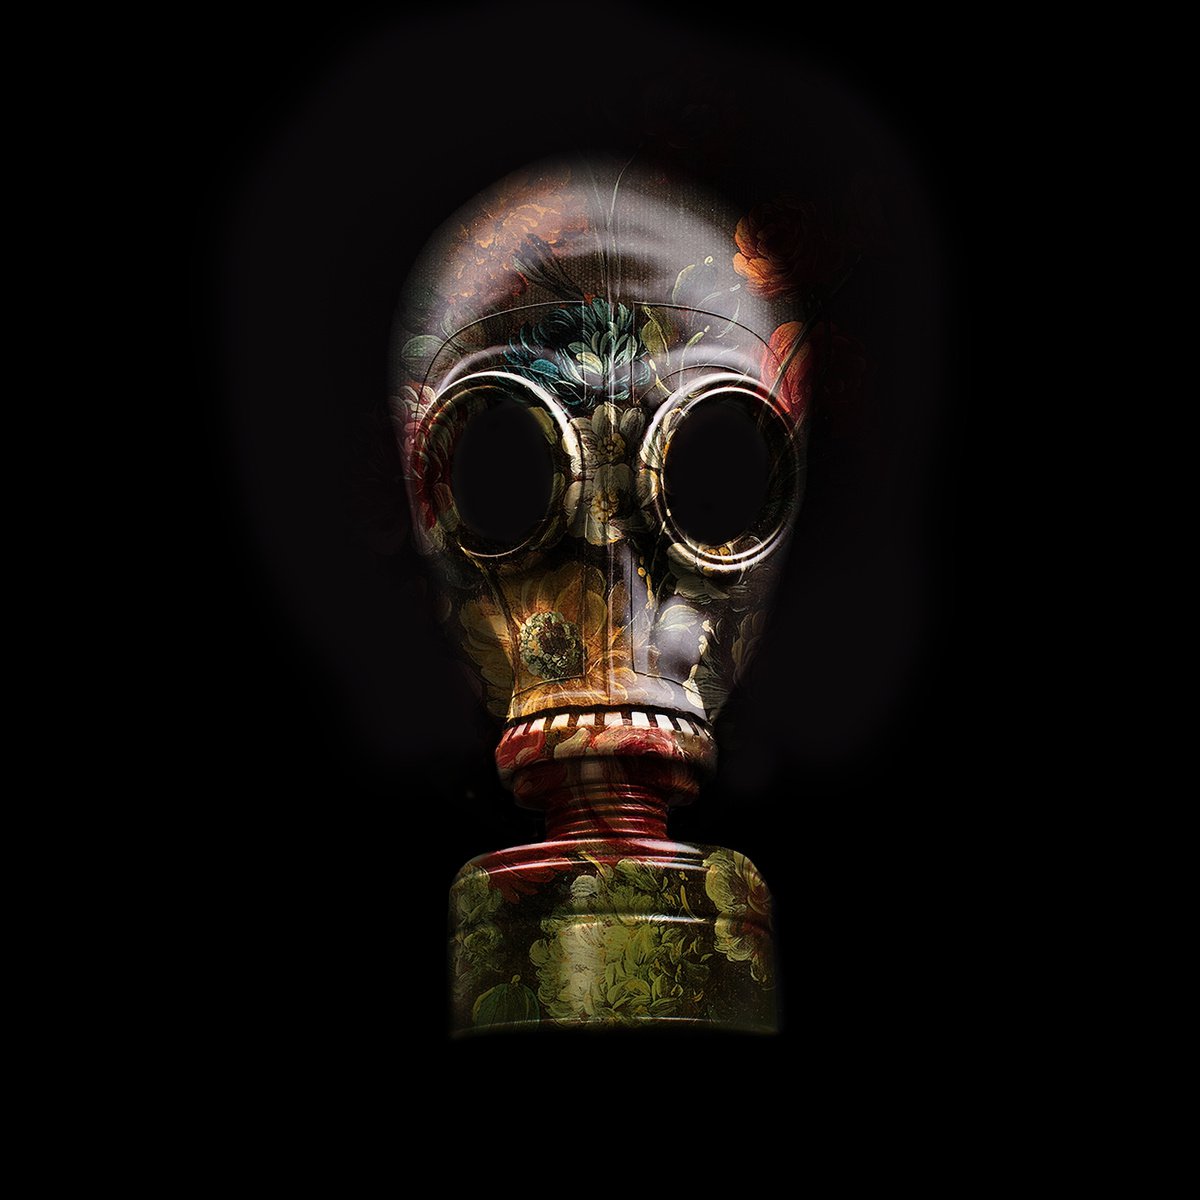 Gas Mask No.3 by Slasky